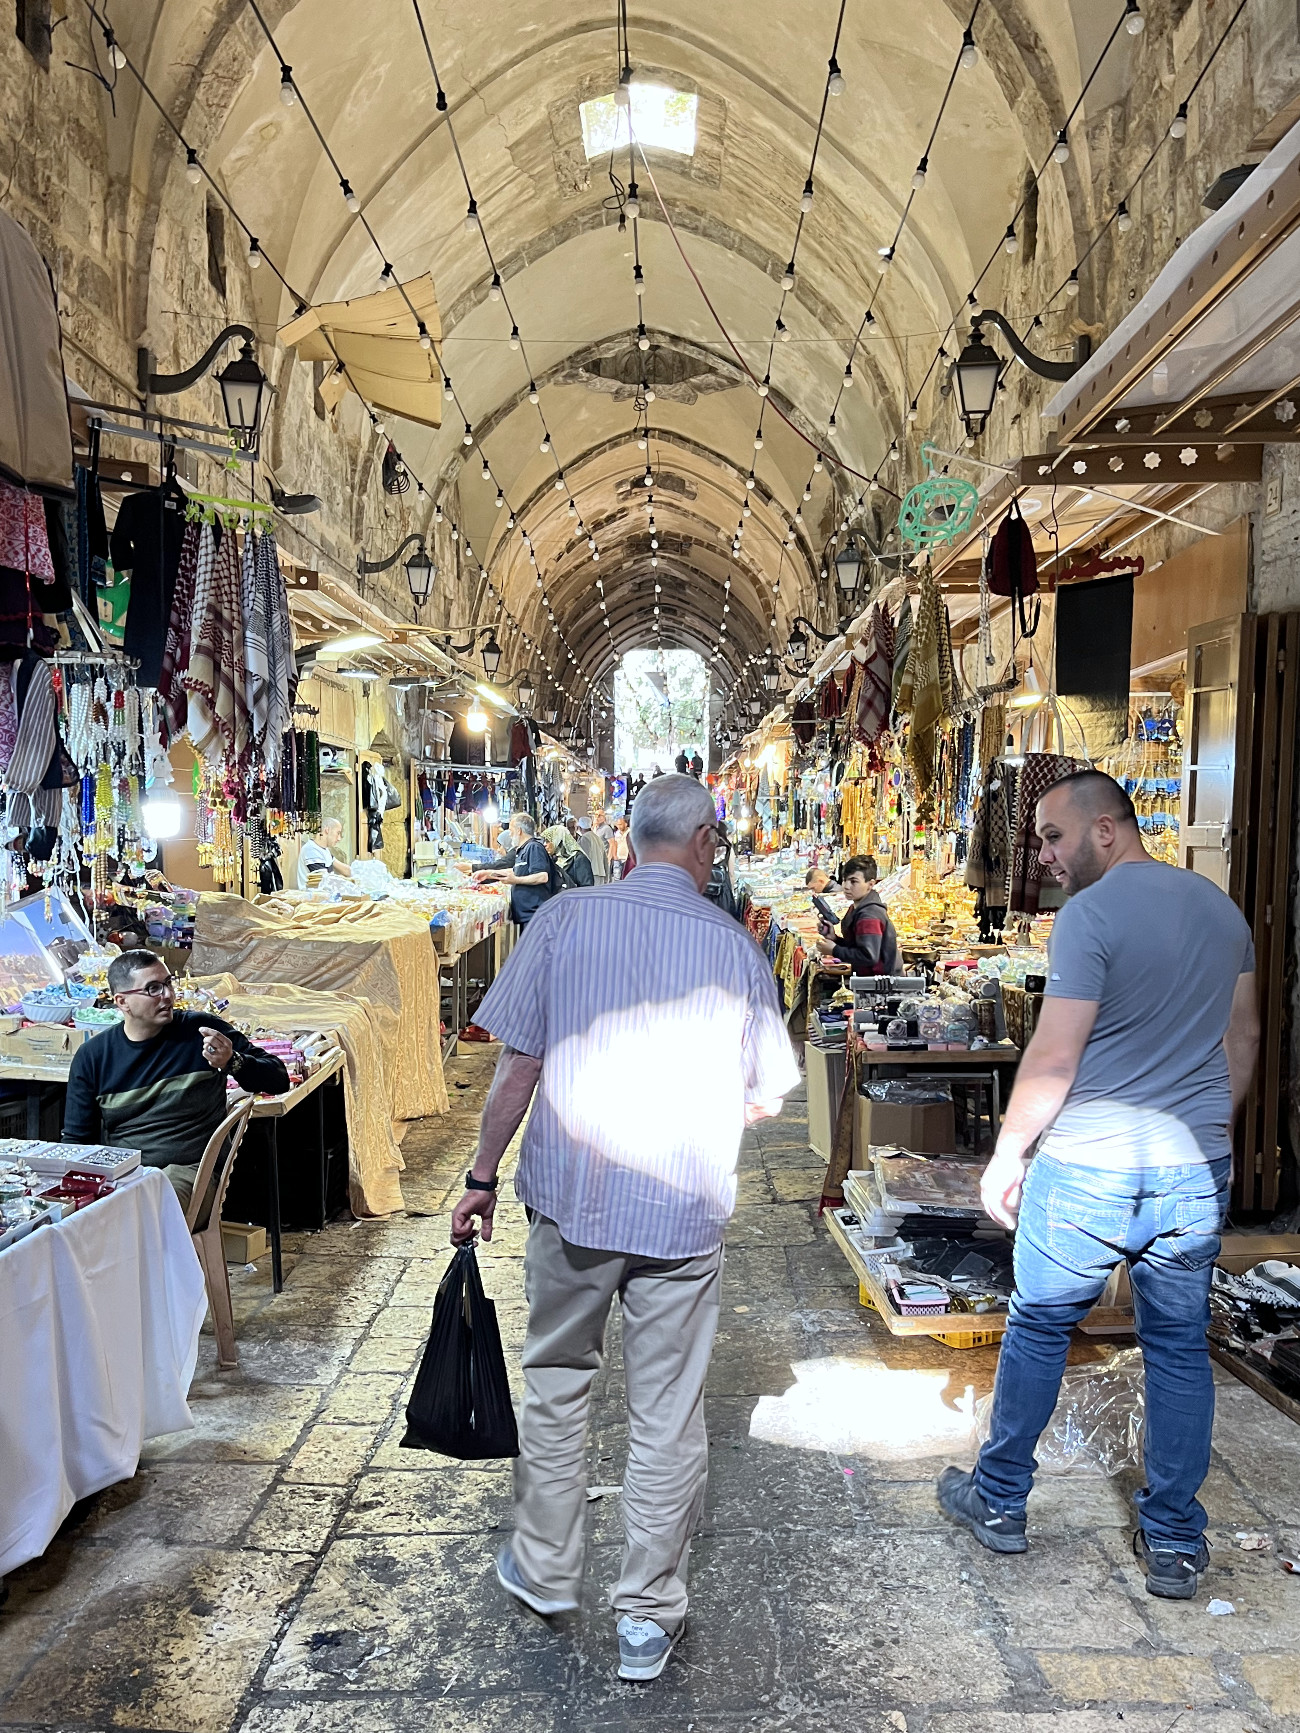 Jerusalem Christian Quarter Market